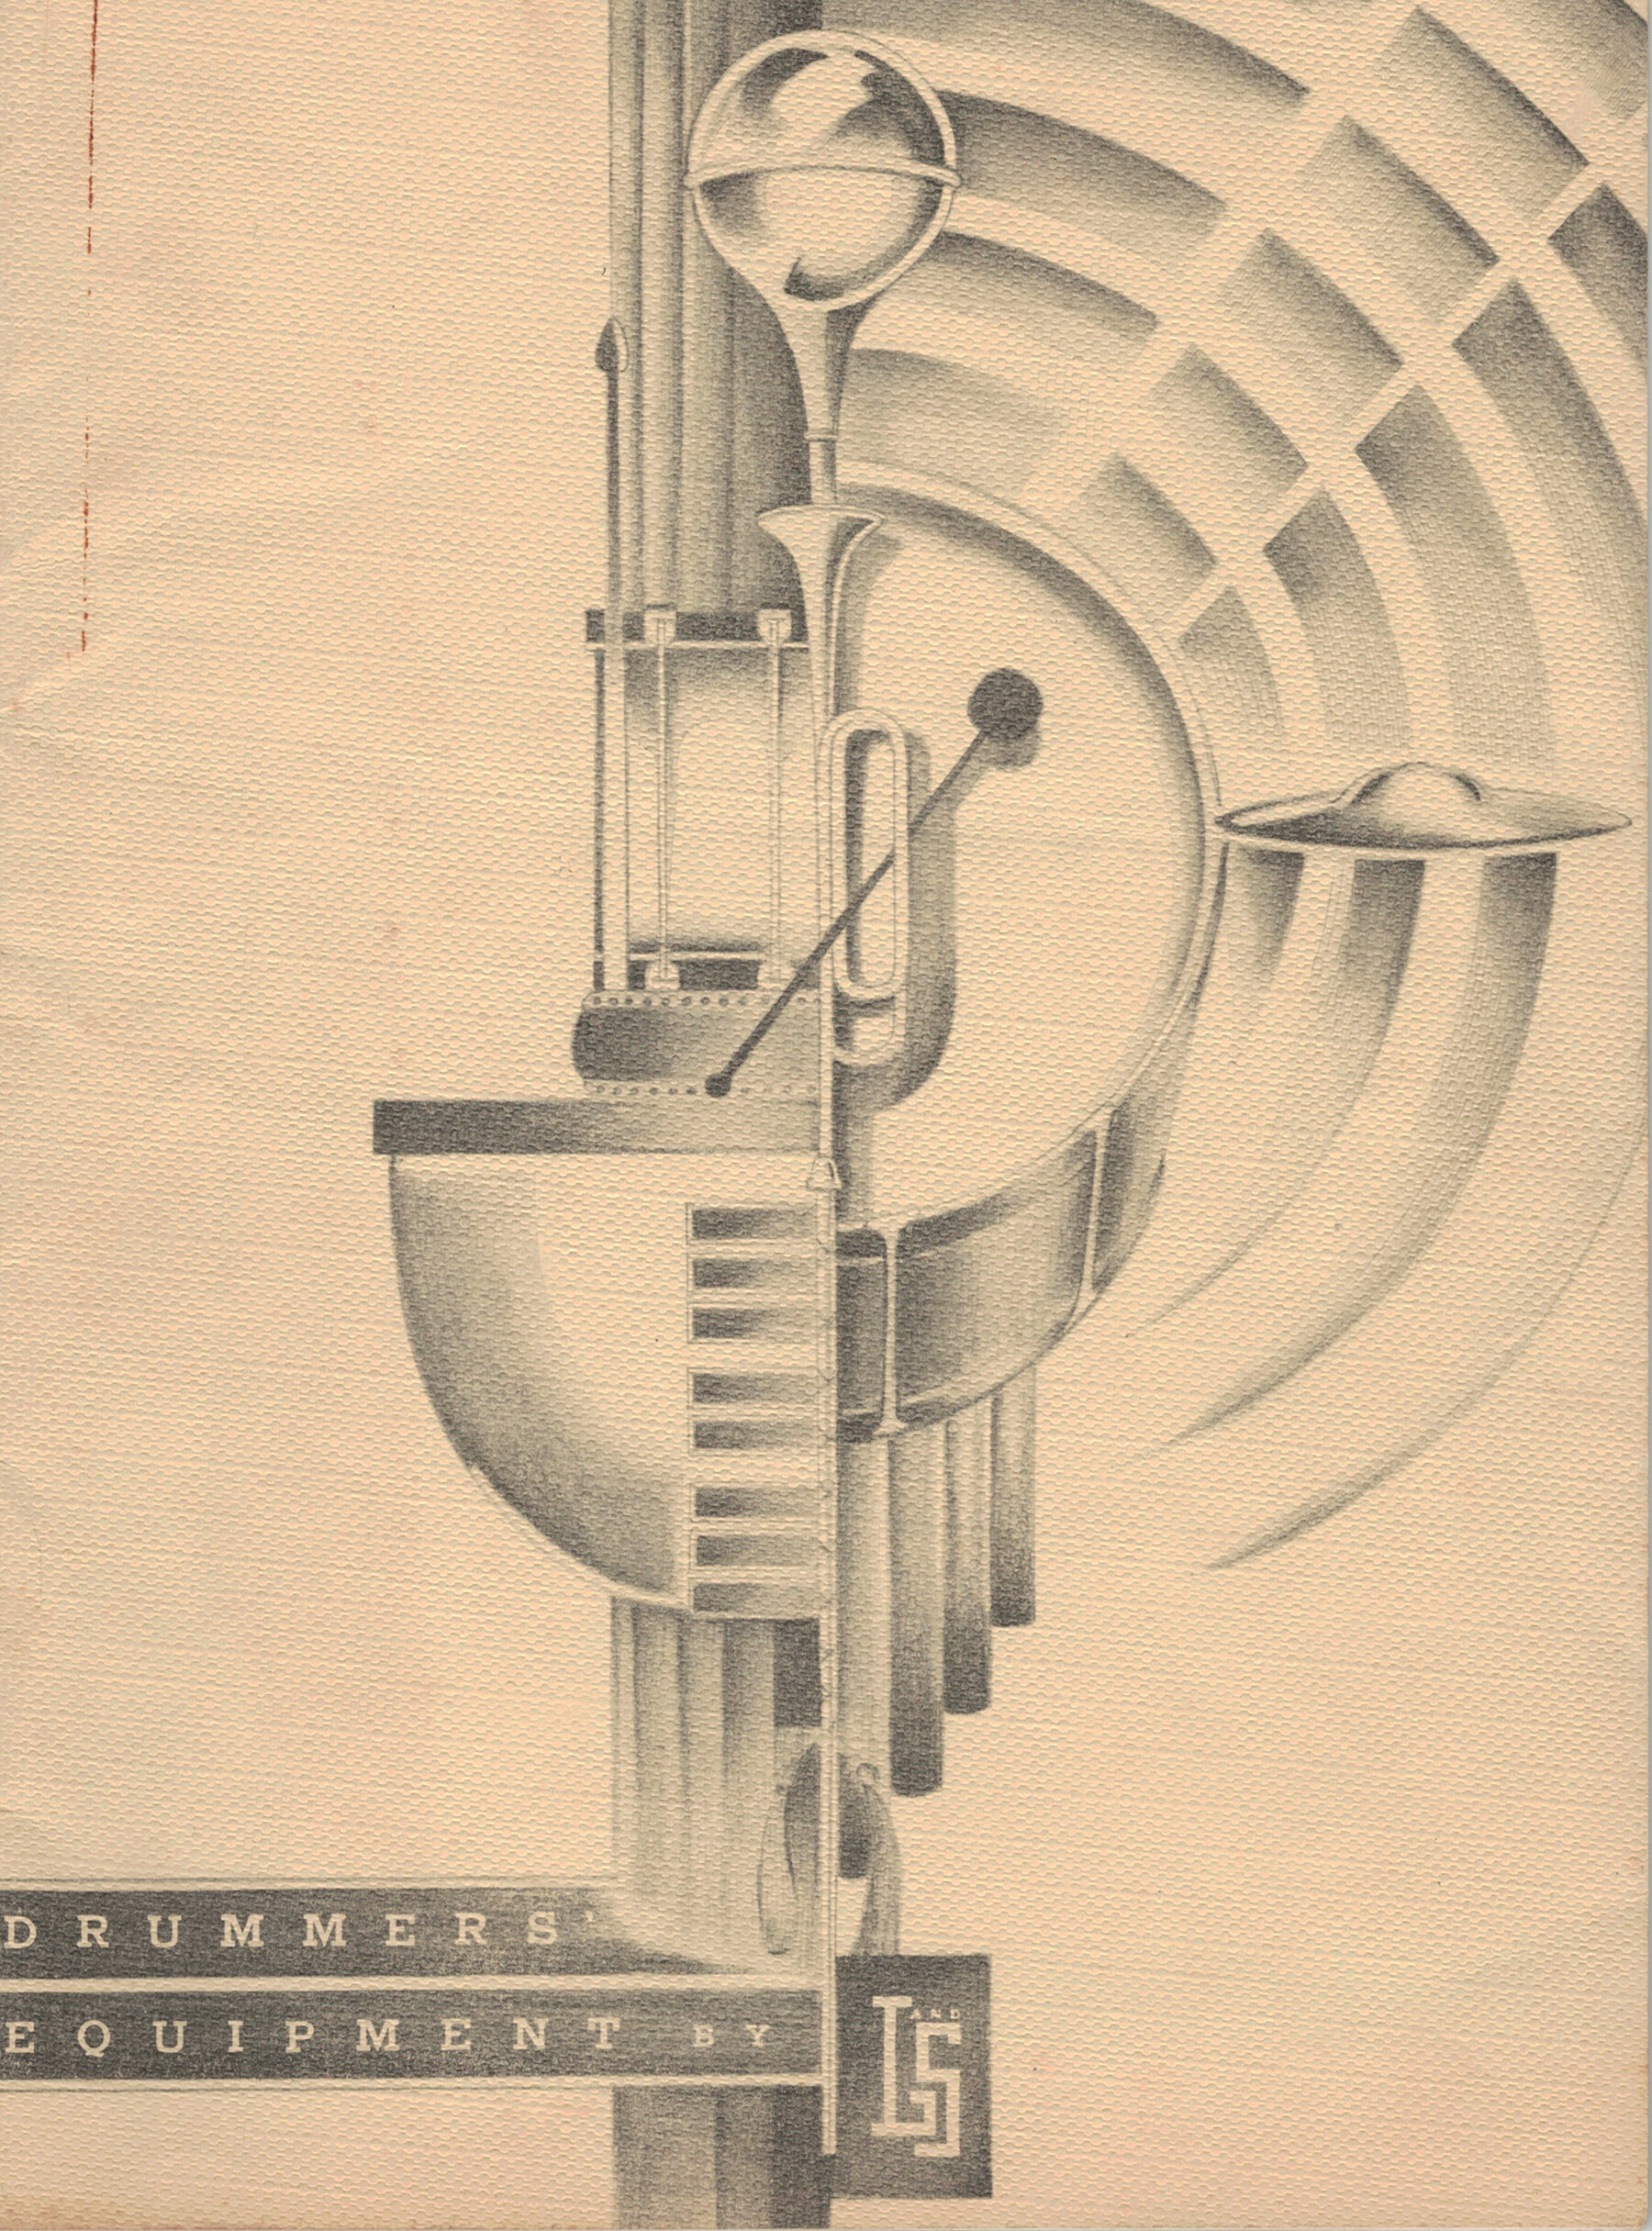 11. LS_1936_Catalog_Cover.jpg